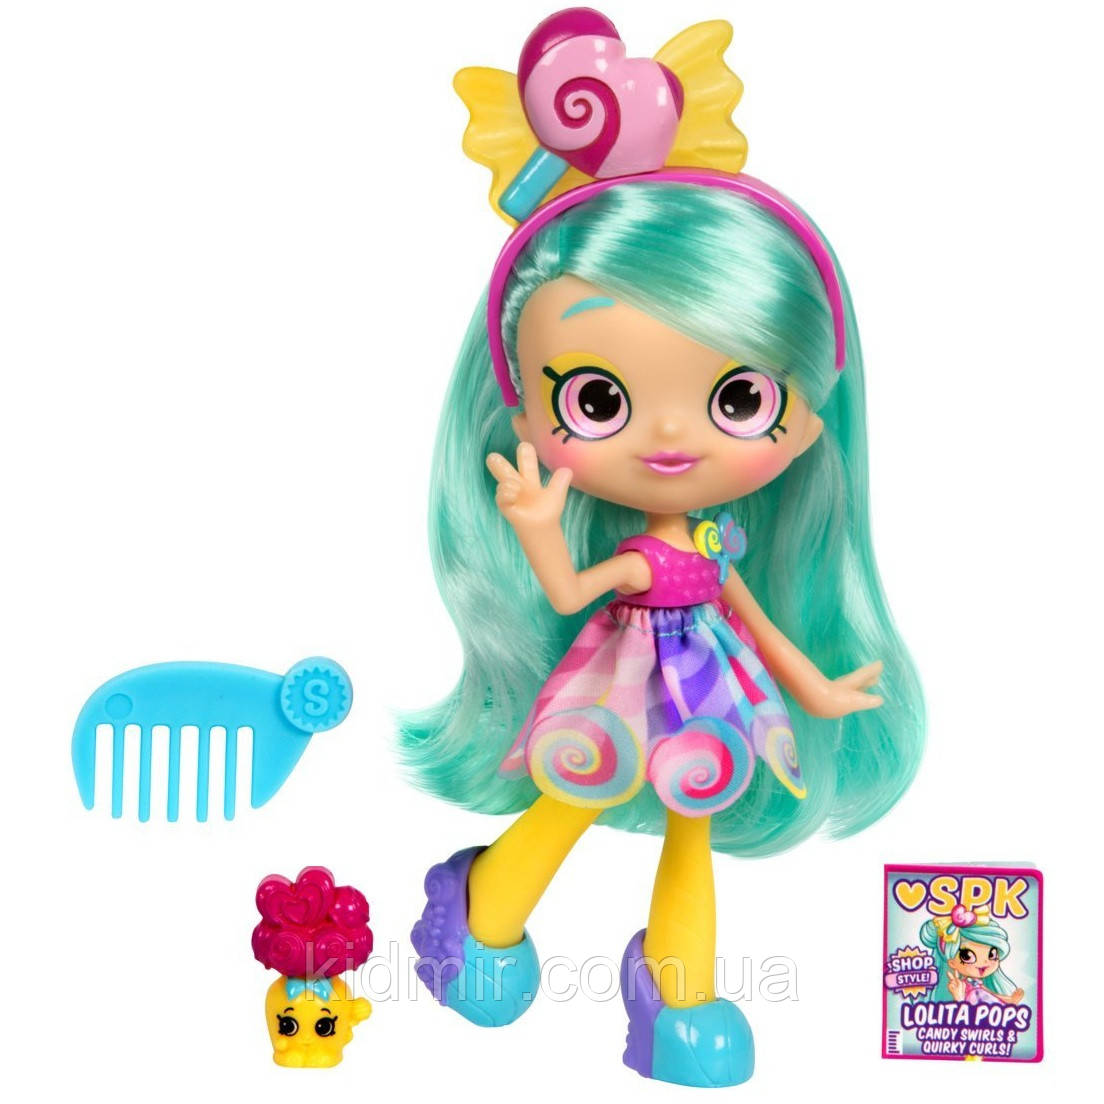 Кукла Шопкинс Лолита Попс Шопстайл Shopkins Shoppies Lolita Pops 56936